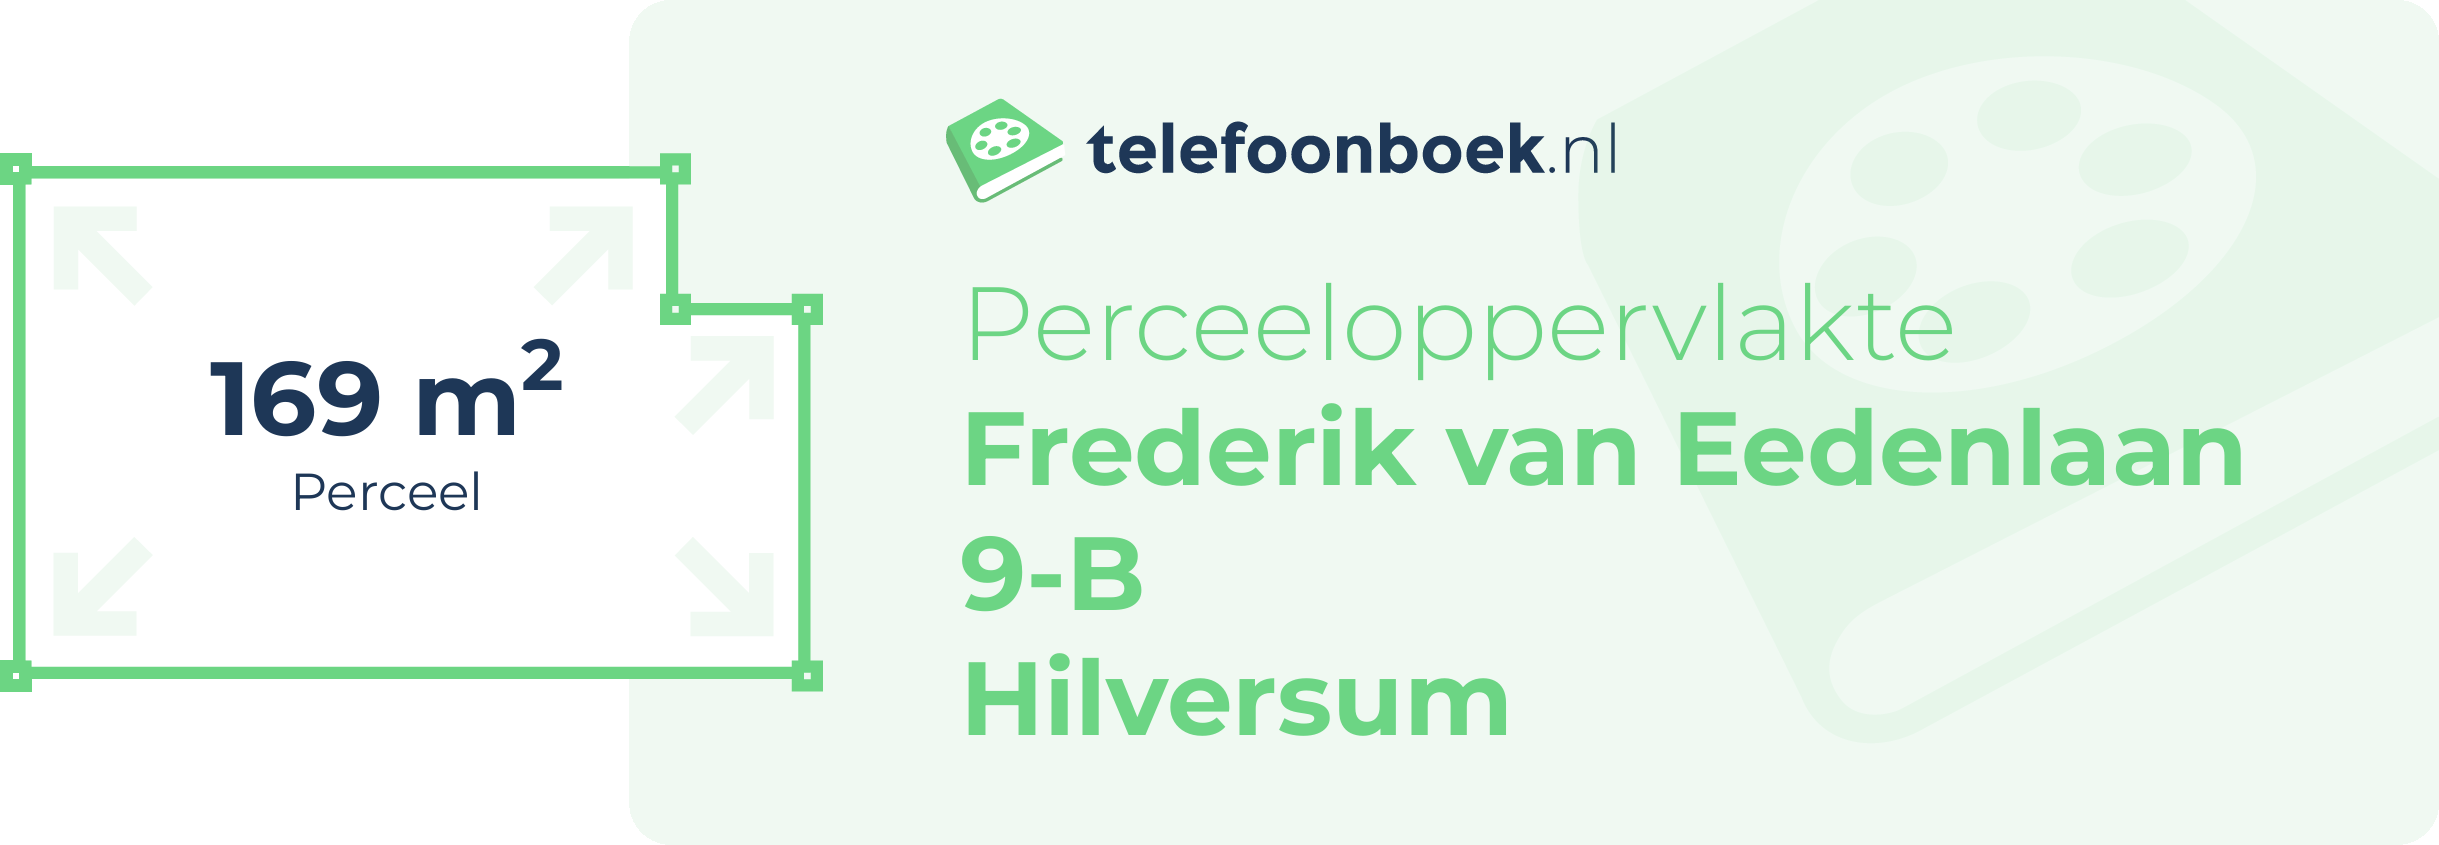 Perceeloppervlakte Frederik Van Eedenlaan 9-B Hilversum